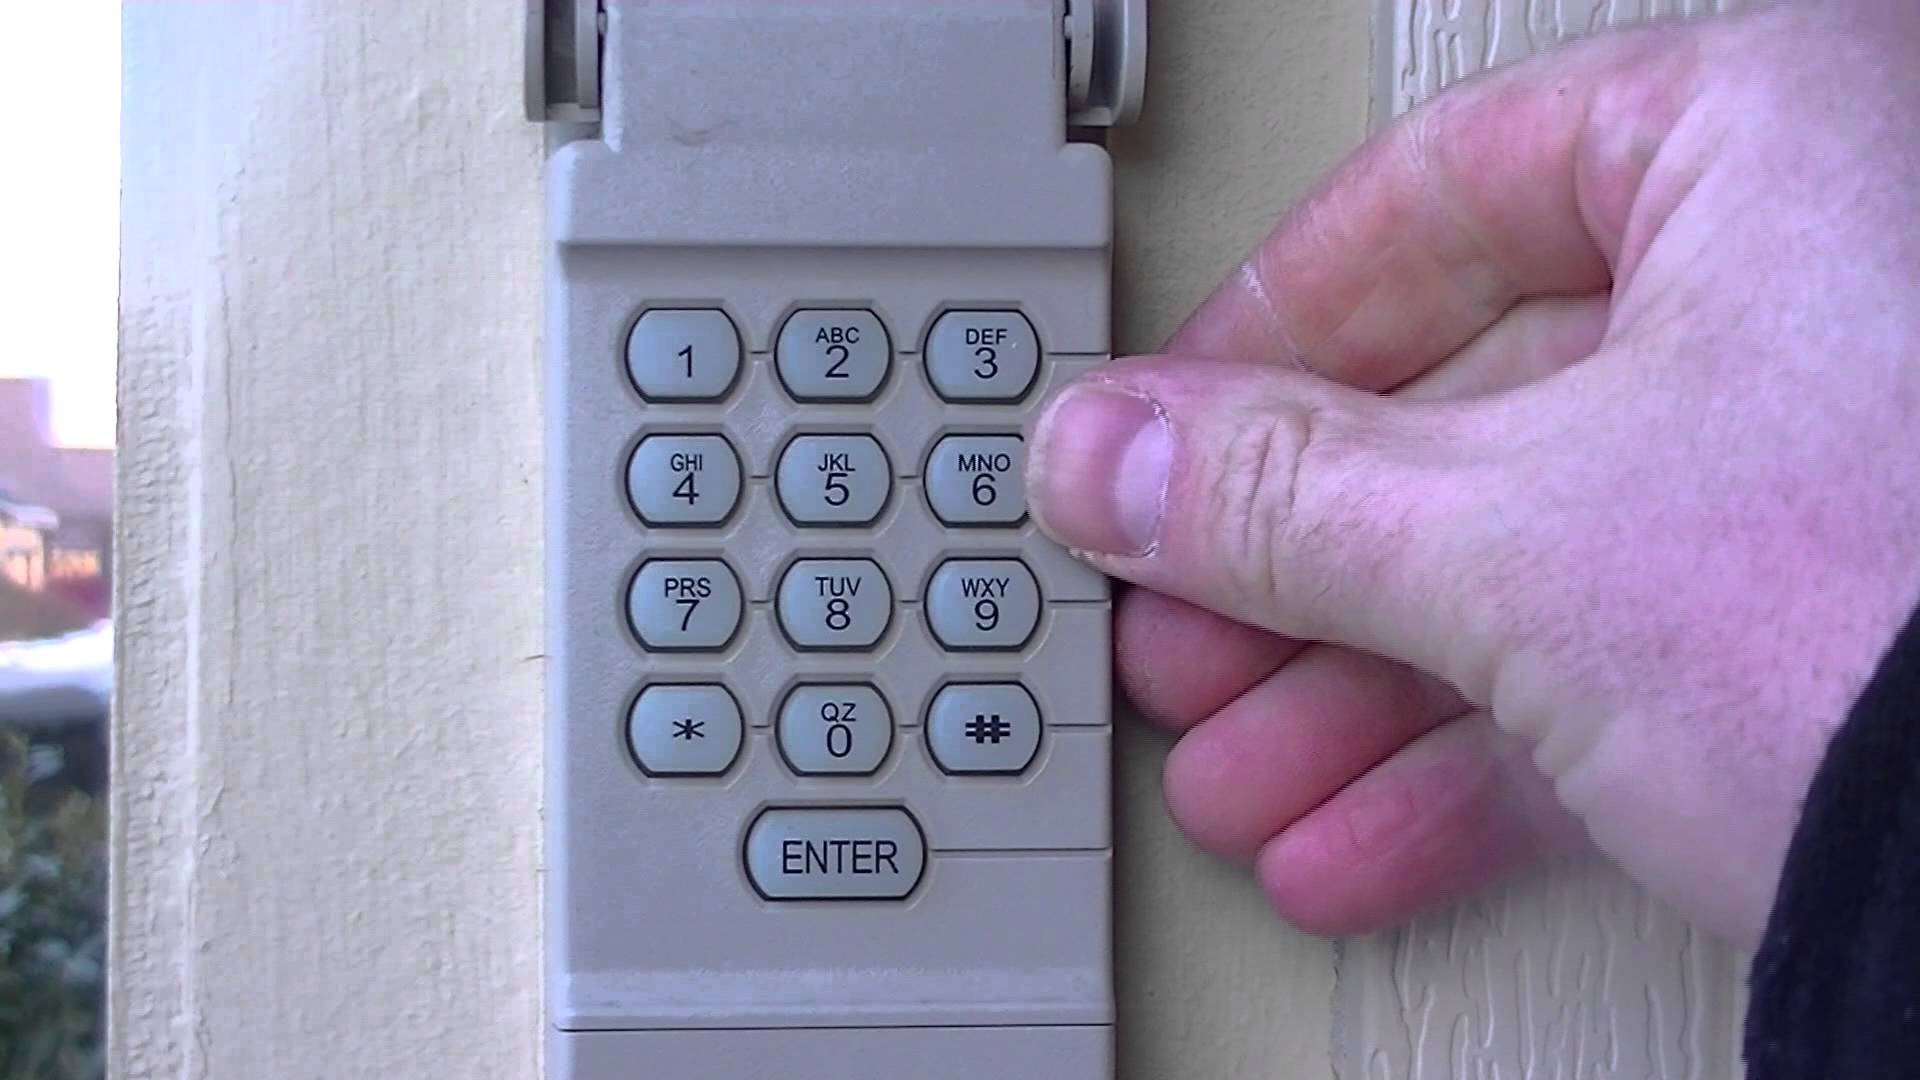 clicker keypad garage door opener manual